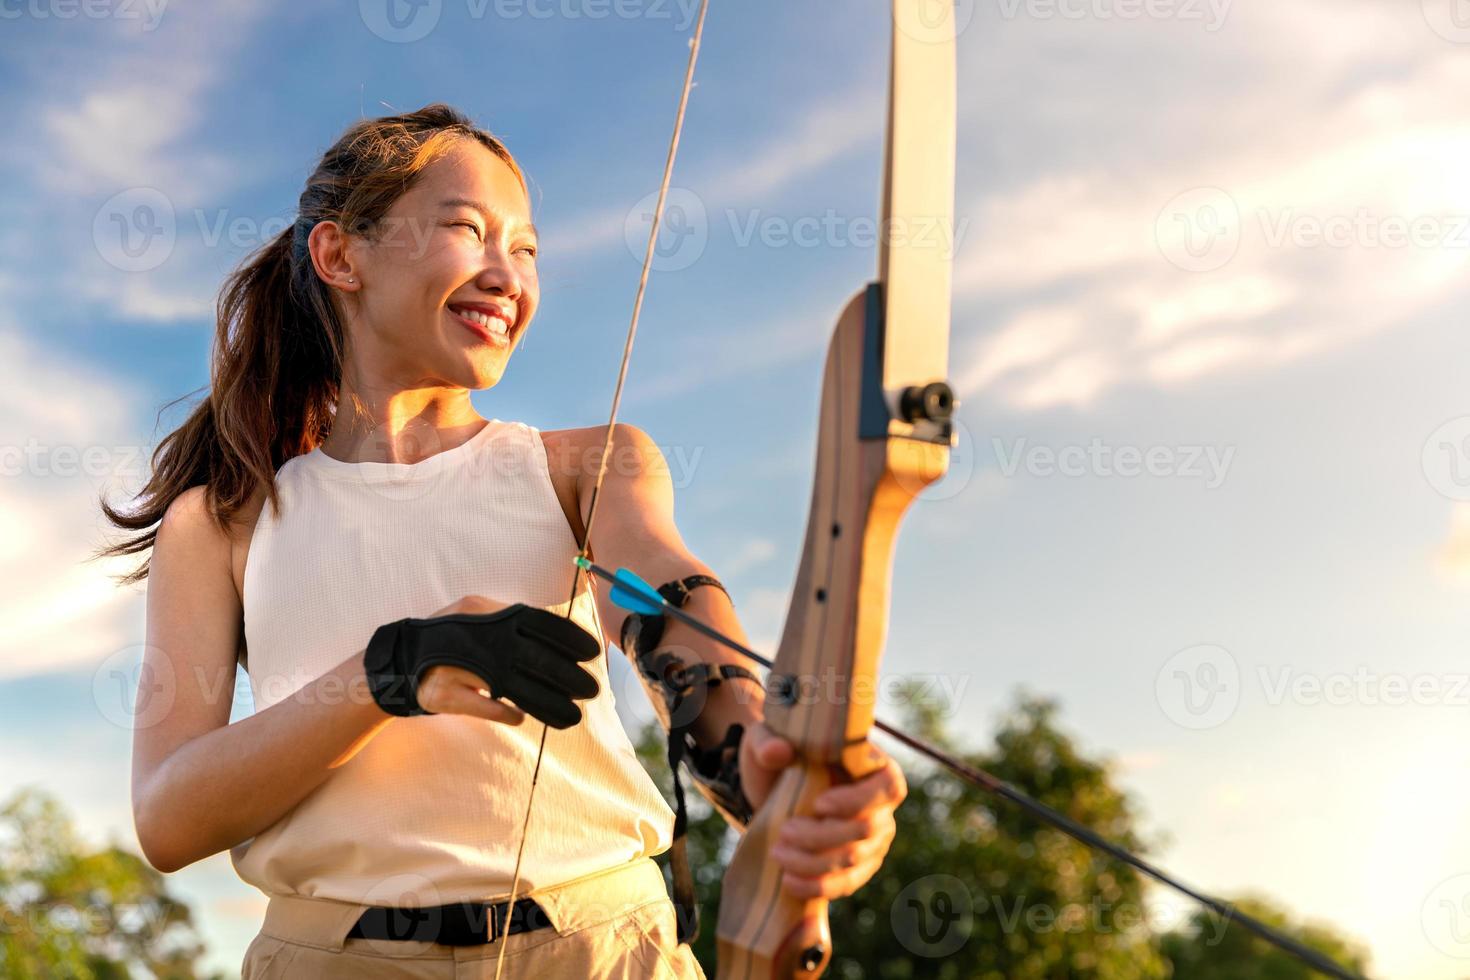 ung kvinnlig bågskytt, bågskytte, skjuta pilbåge i naturfältet till mål, framgångskoncept, på fältet för sportövning vid solnedgången foto